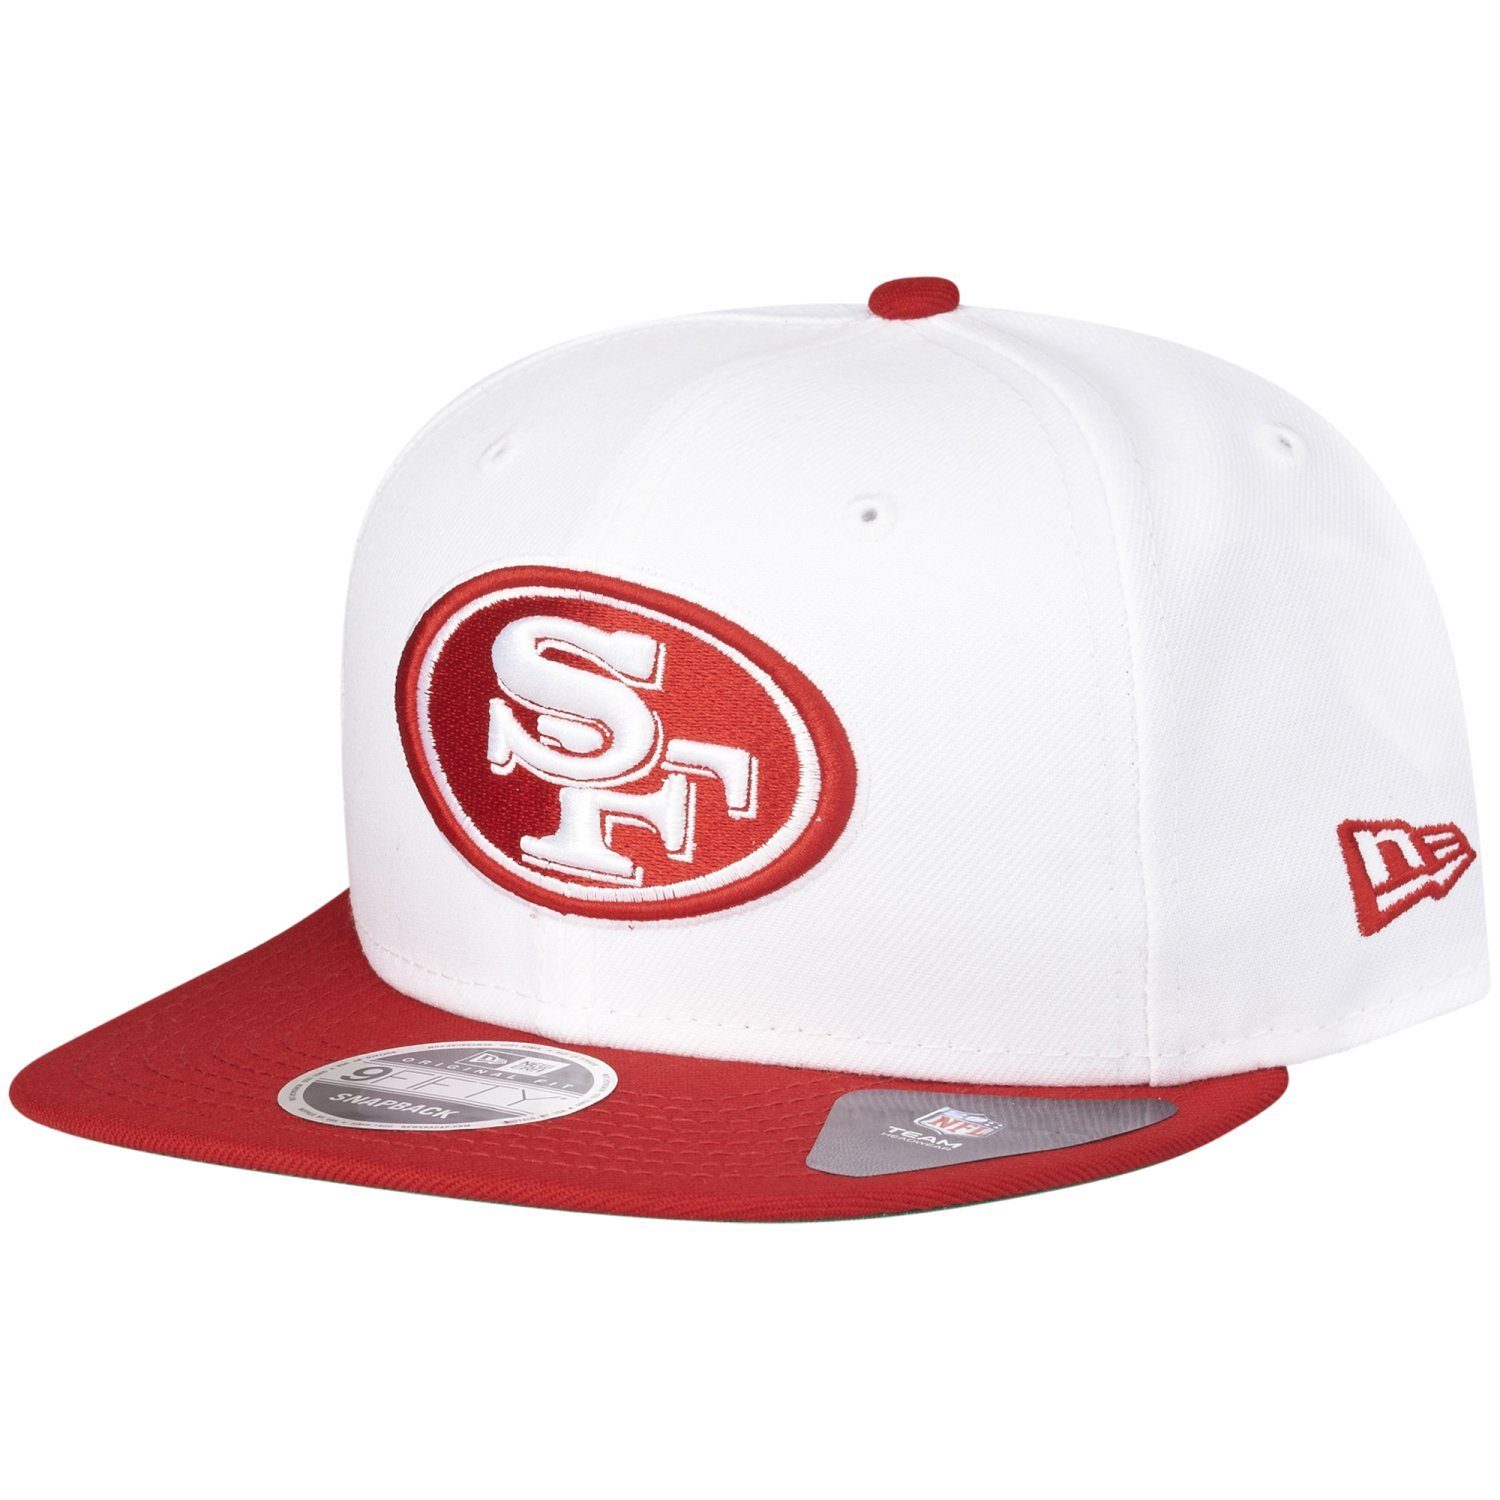 New Era Snapback Cap OriginalFit San Francisco 49ers